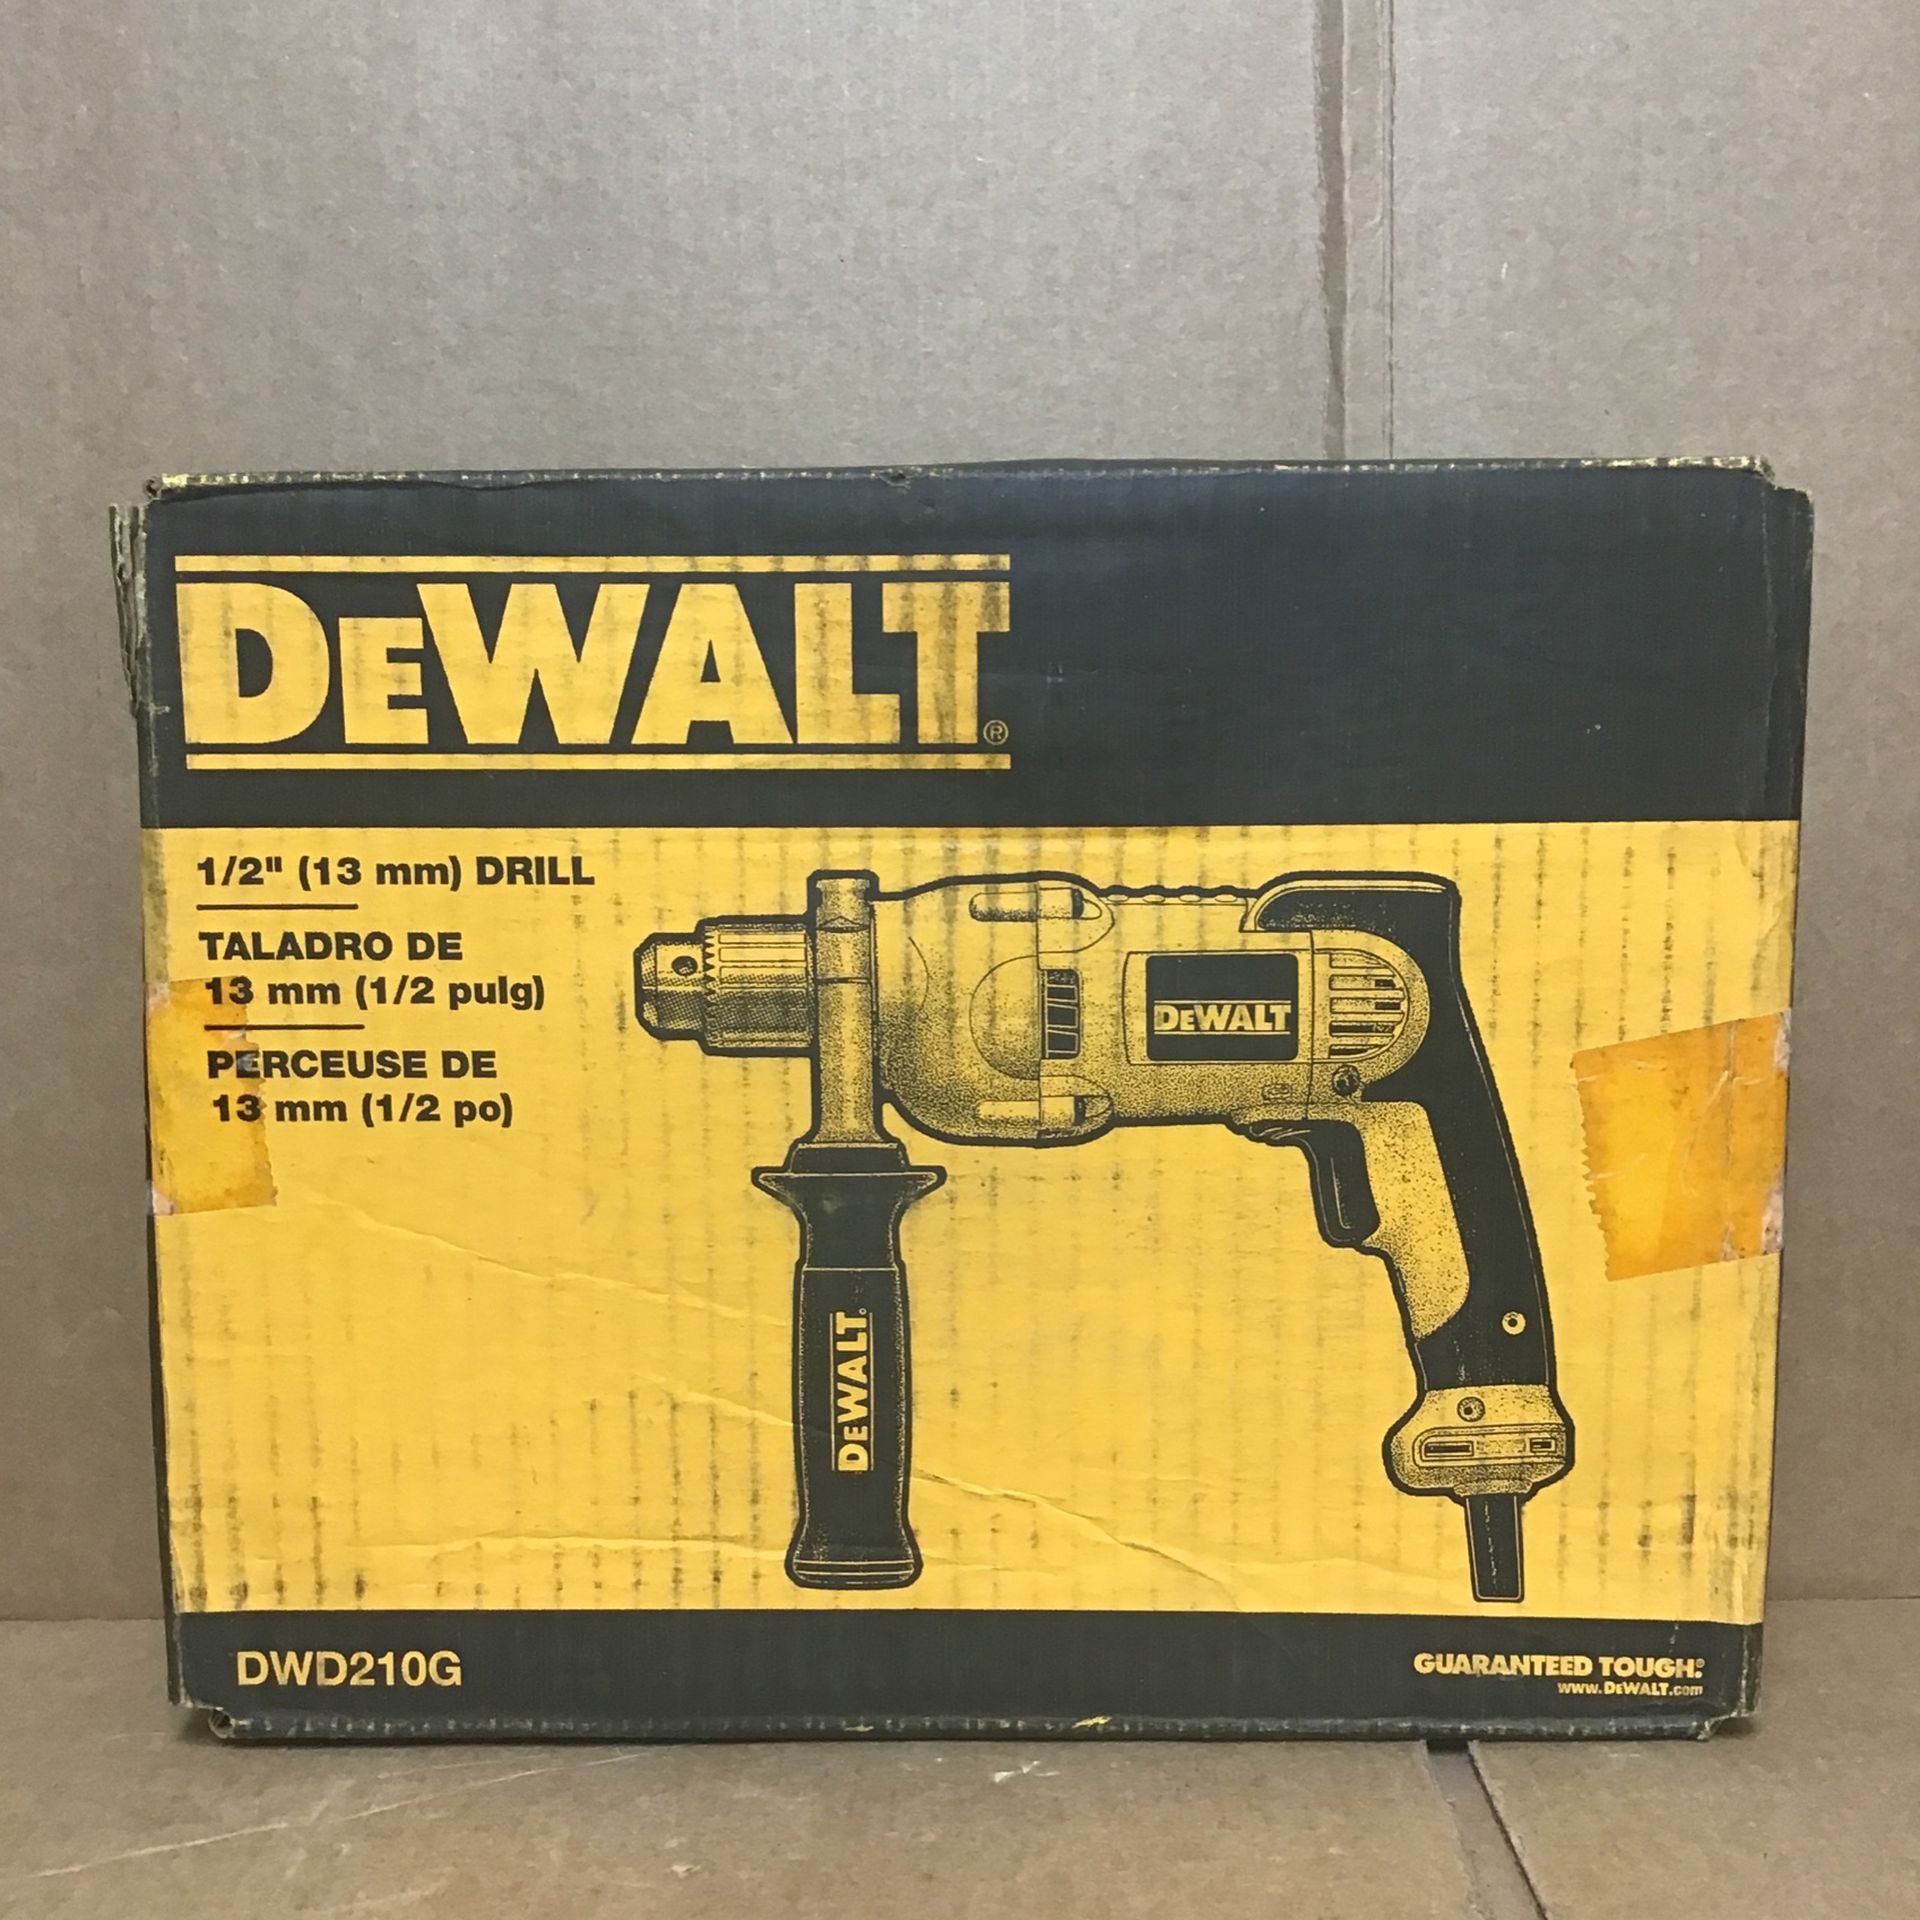 Dewalt DWD210G Drill/Driver 1/2” Corded Drill